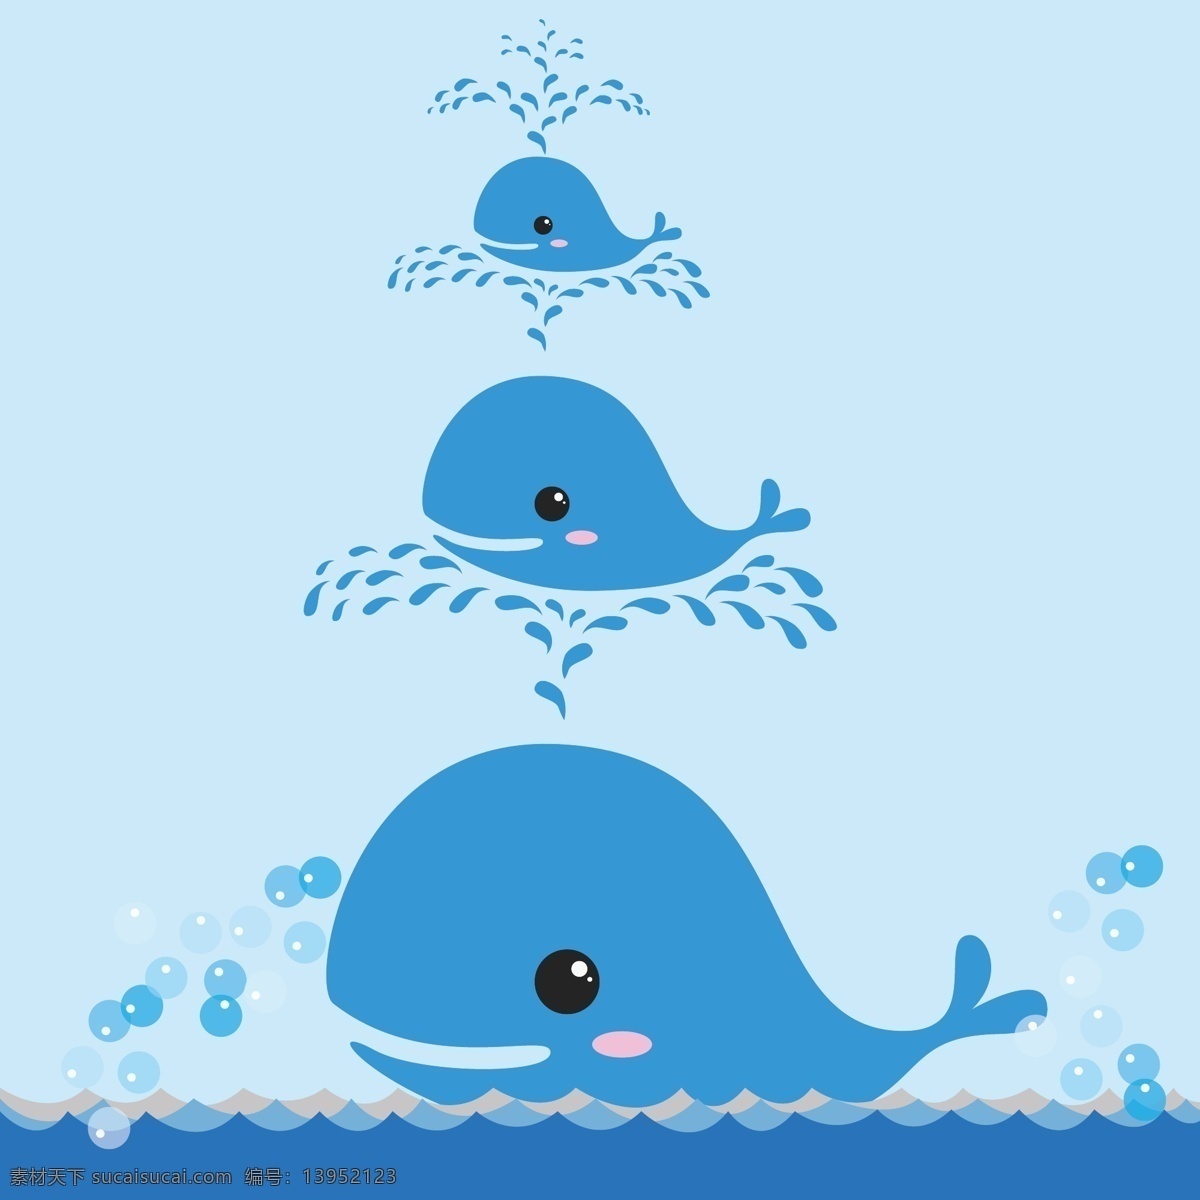 卡通鲸鱼 鲸鱼 卡通 蓝色 浪花 可爱 激浪 动漫动画 动漫人物